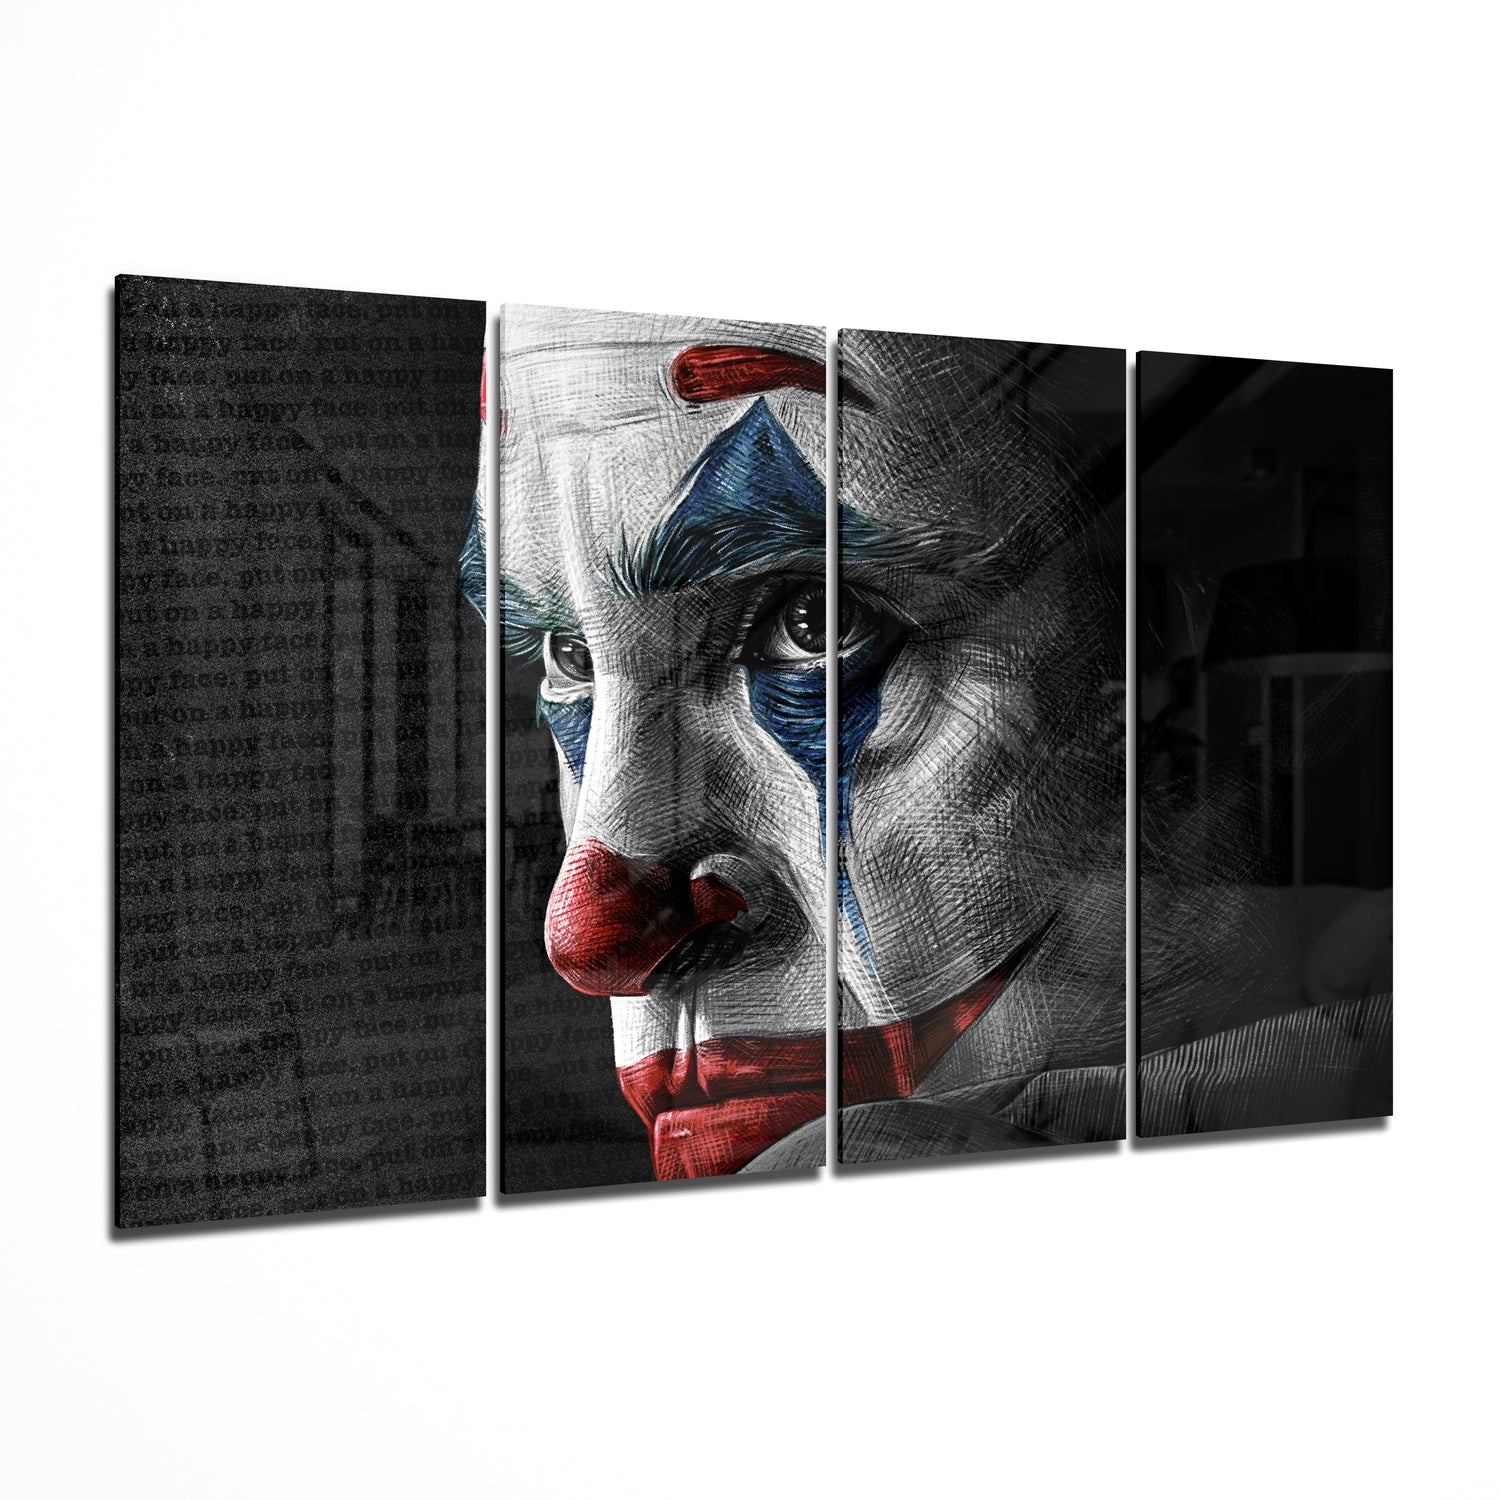 Joker 4 Pieces Mega Glass Wall Art (150x92 cm)